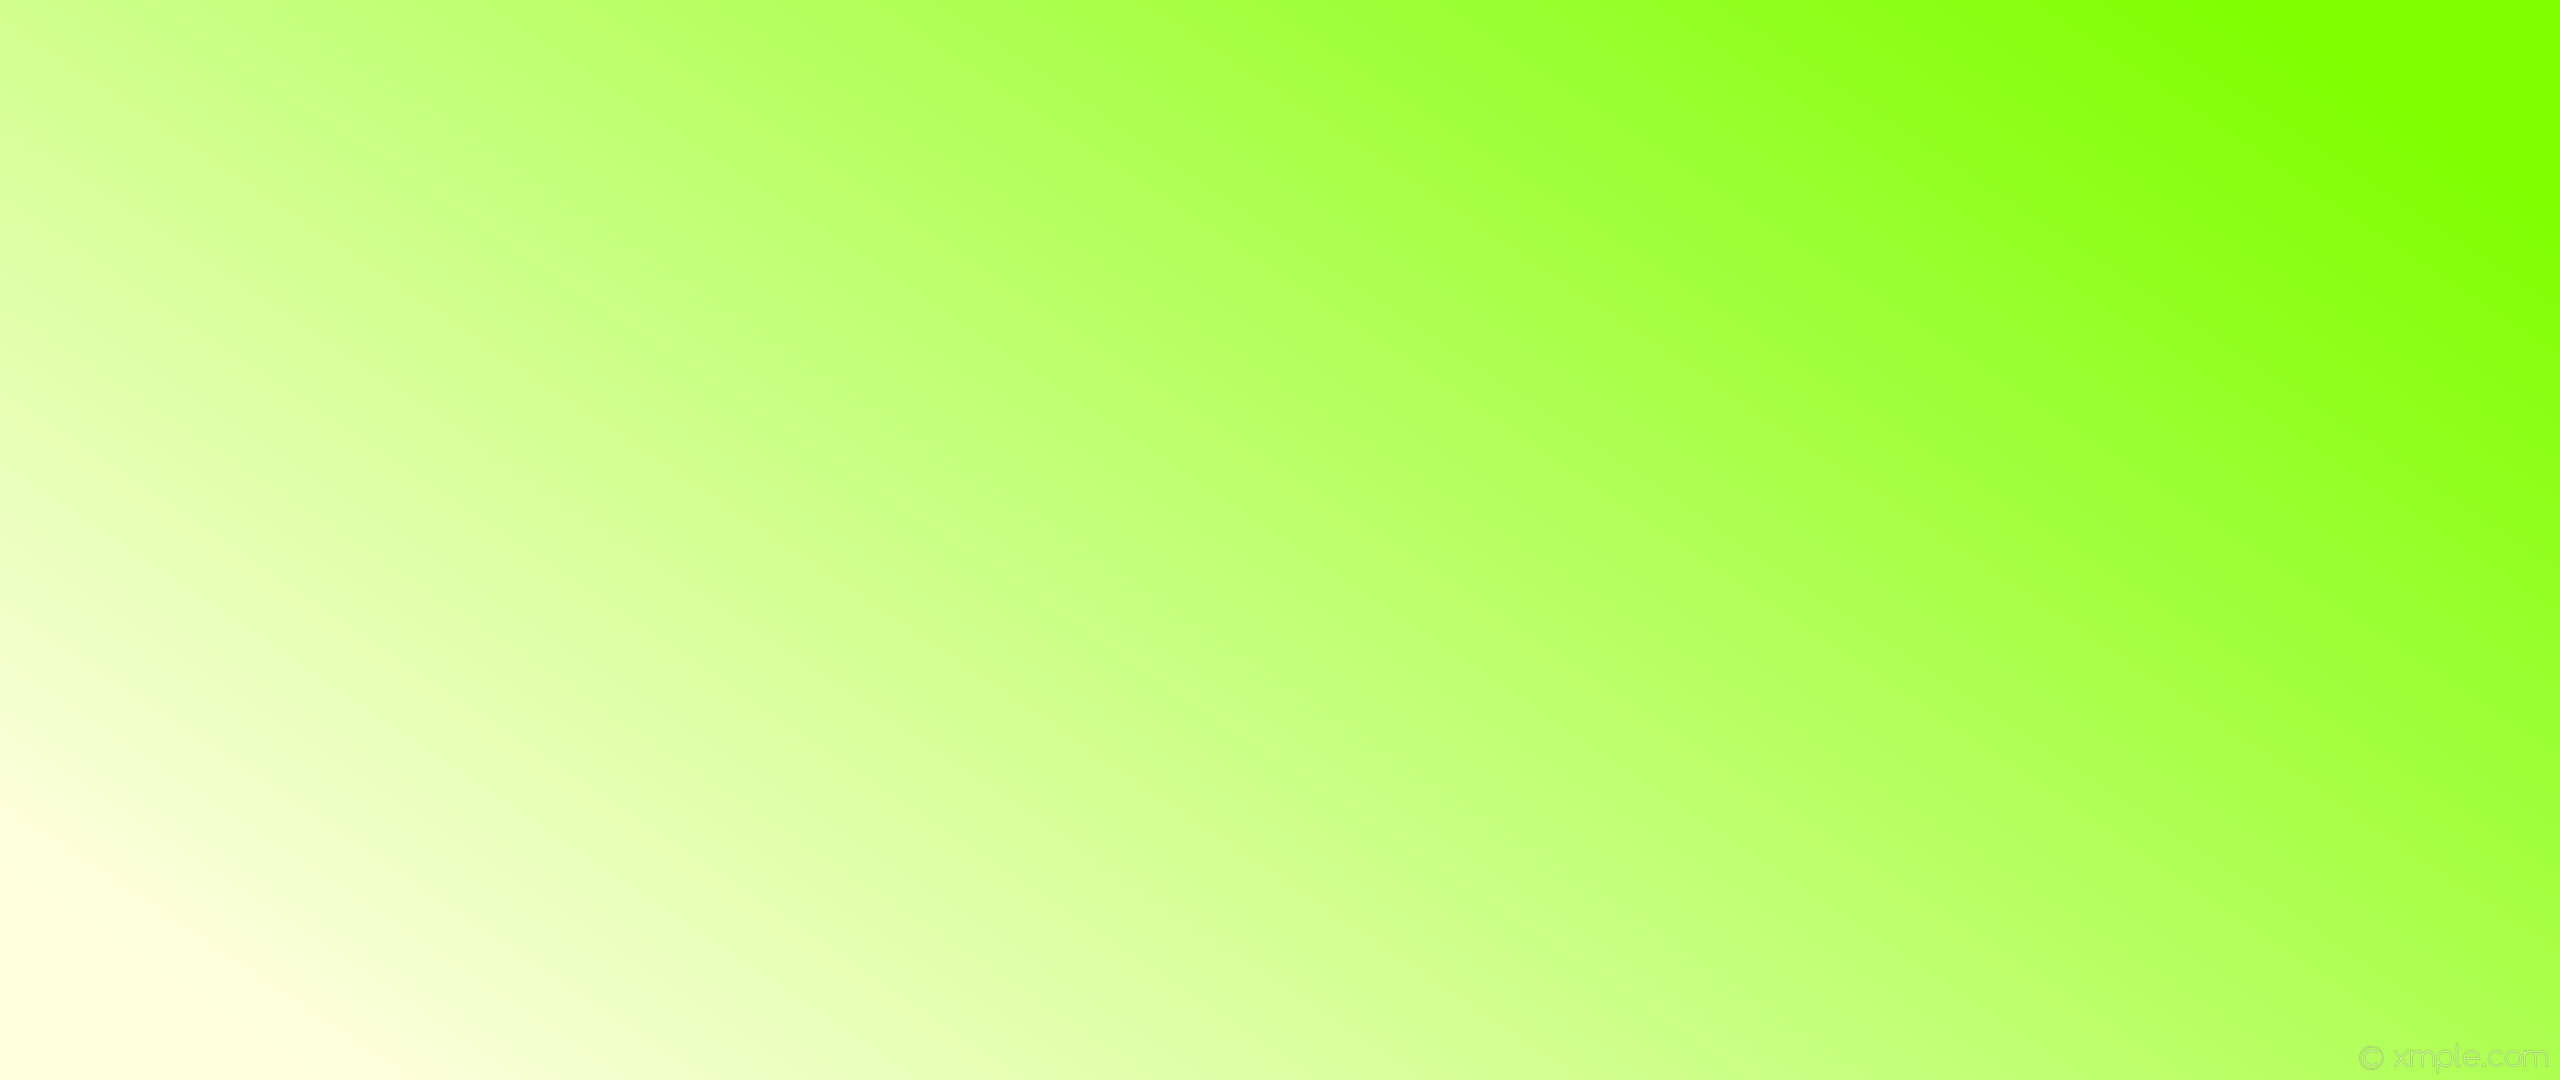 2560x1080 wallpaper green yellow gradient linear light yellow chartreuse #ffffe0  #7fff00 195Â°